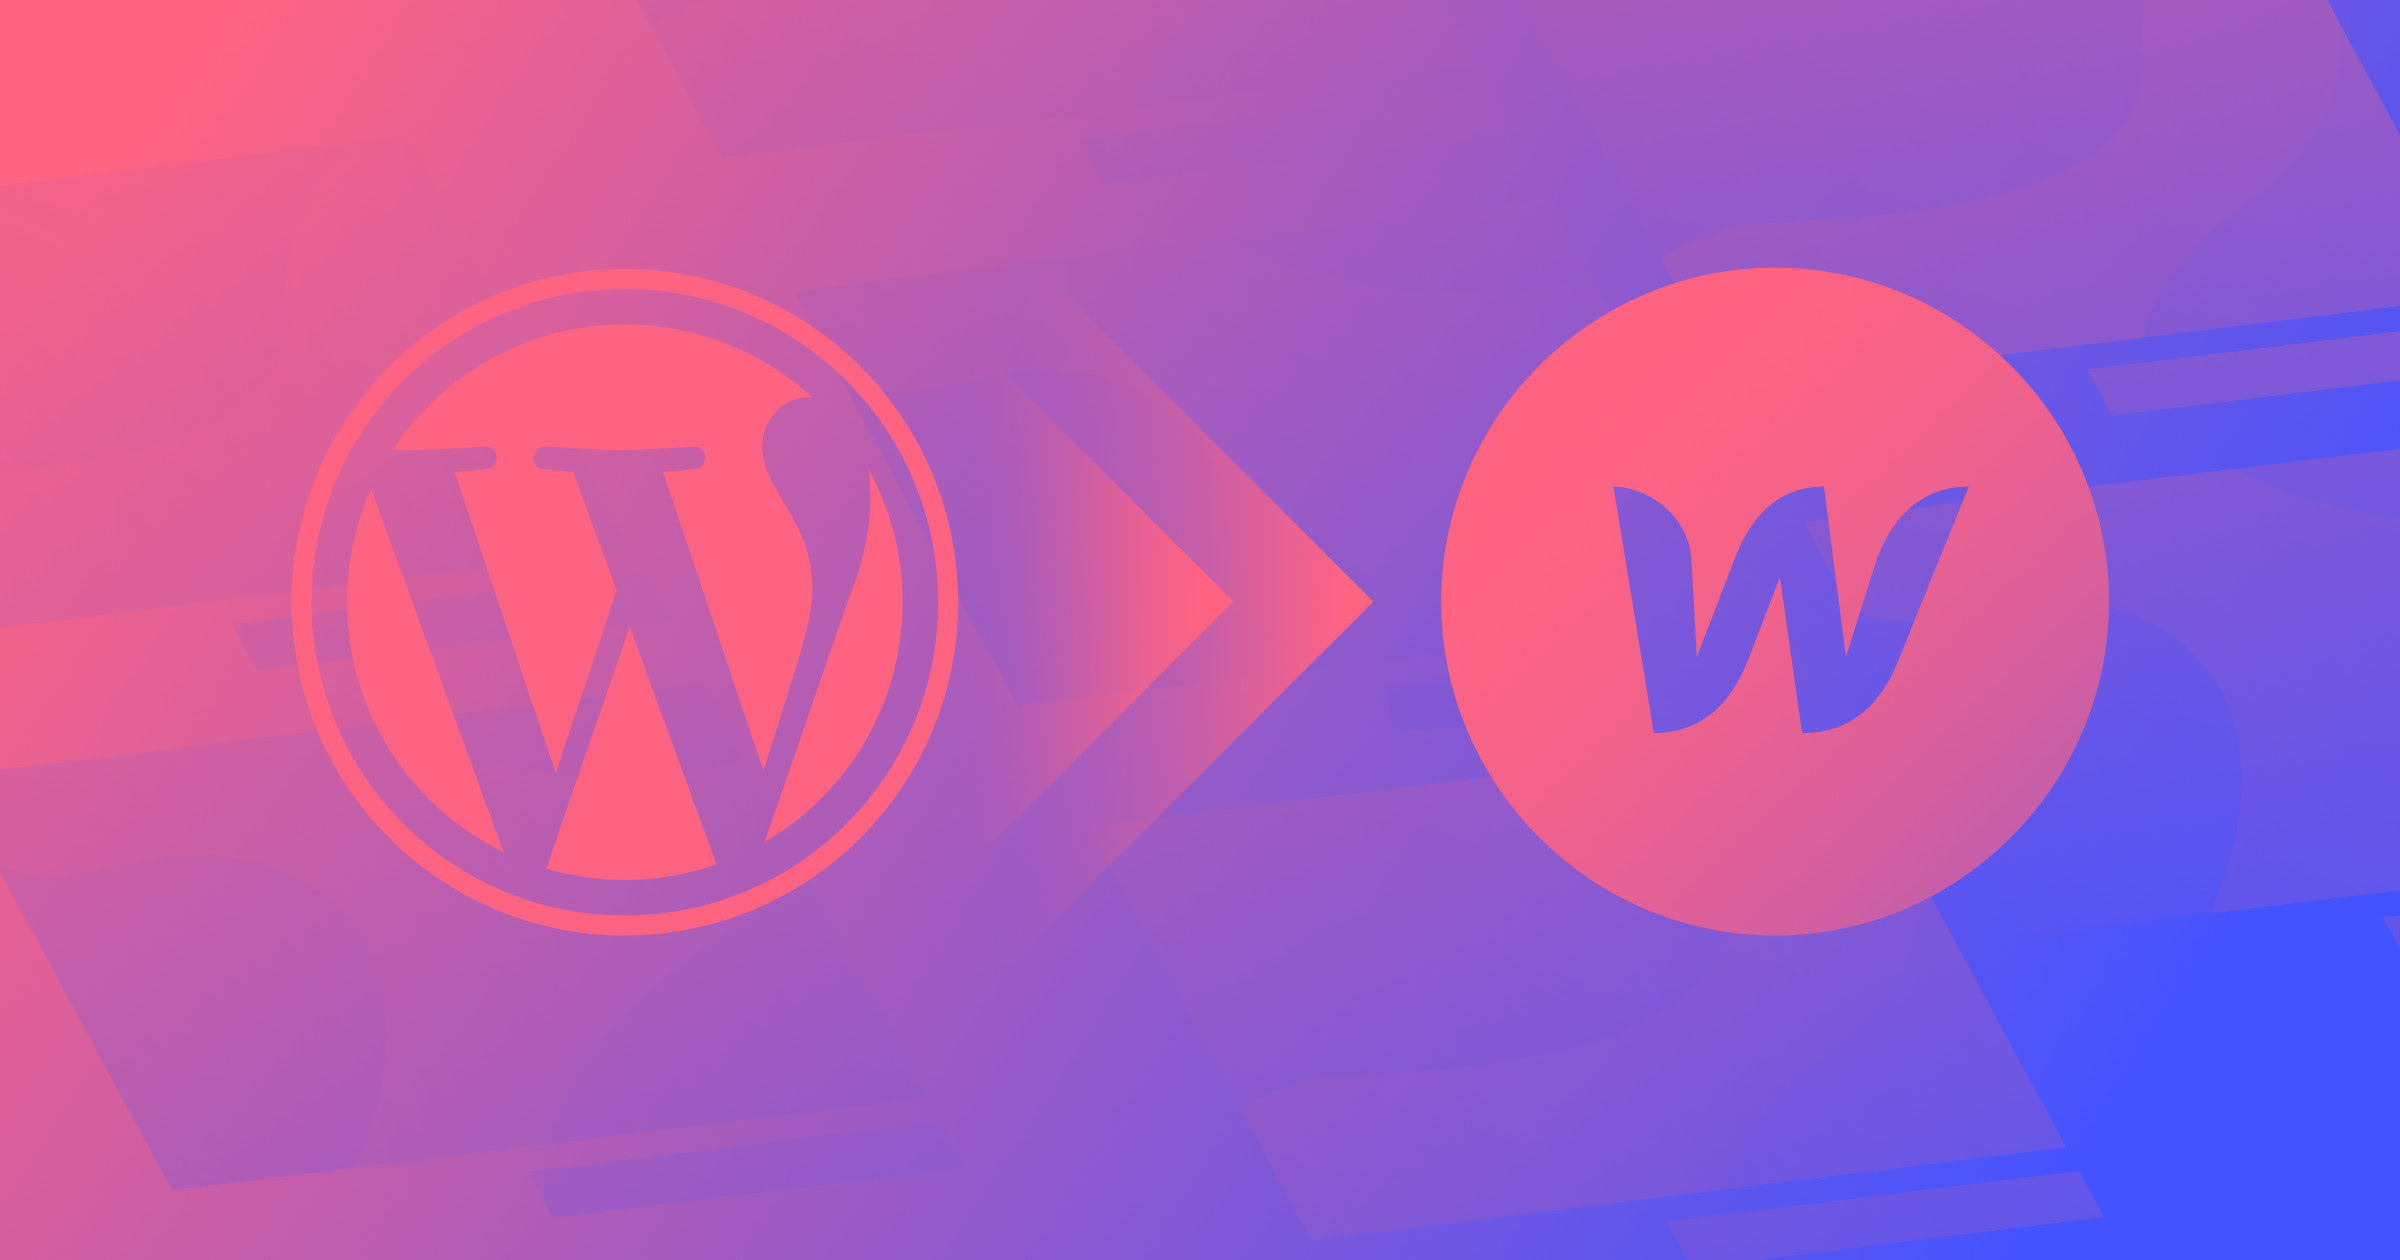 wordpress to webflow